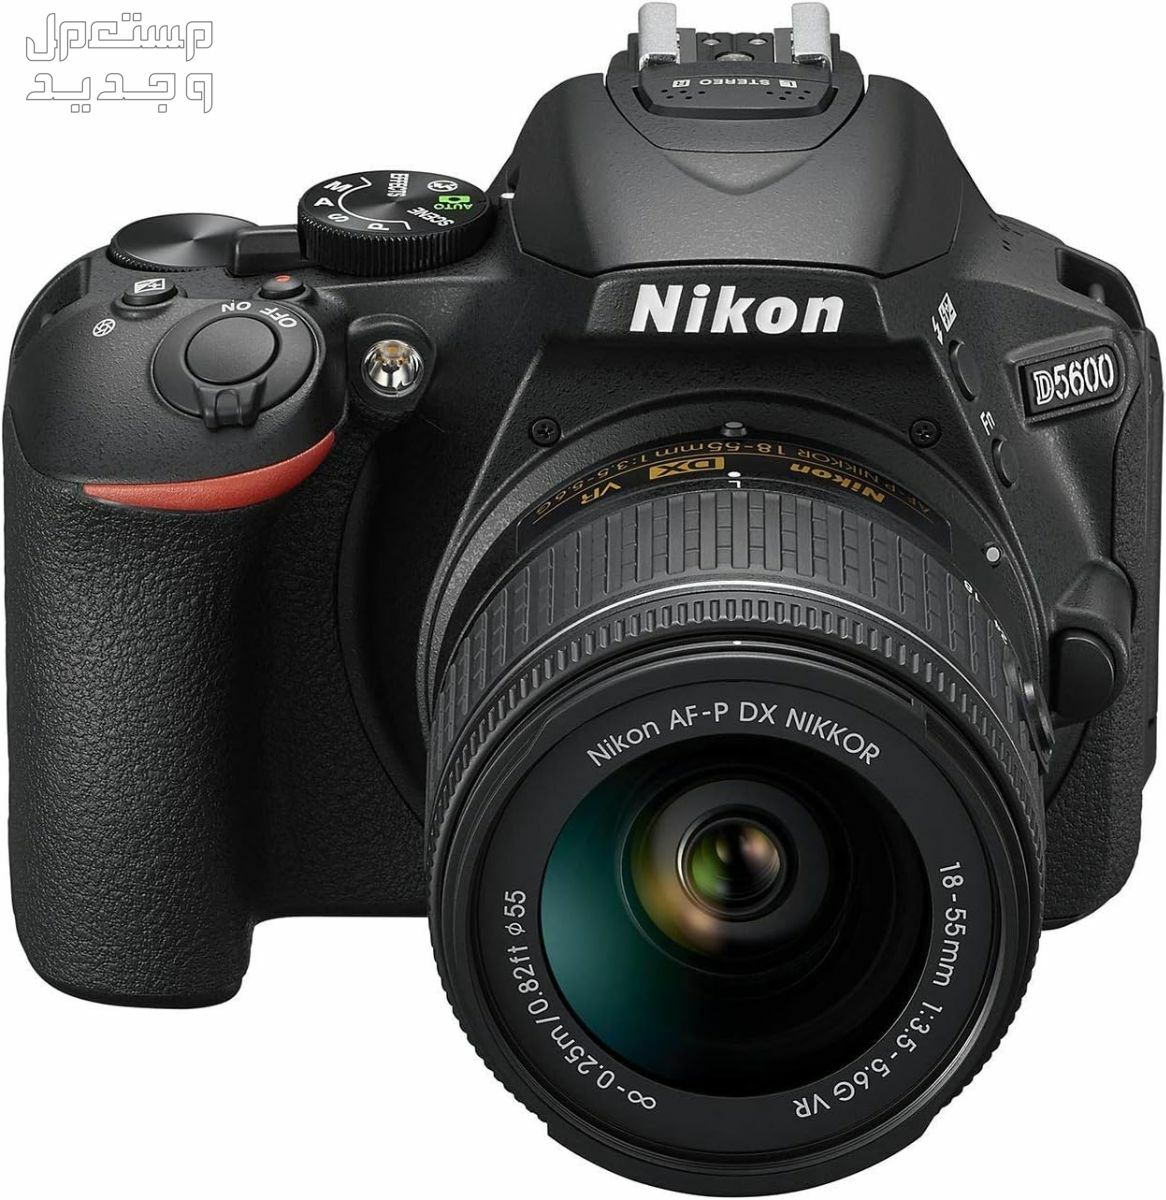 10 كاميرات تصوير ماركات عالمية بأسعار رخيصة في سوريا سعر كاميرا Nikon D5600